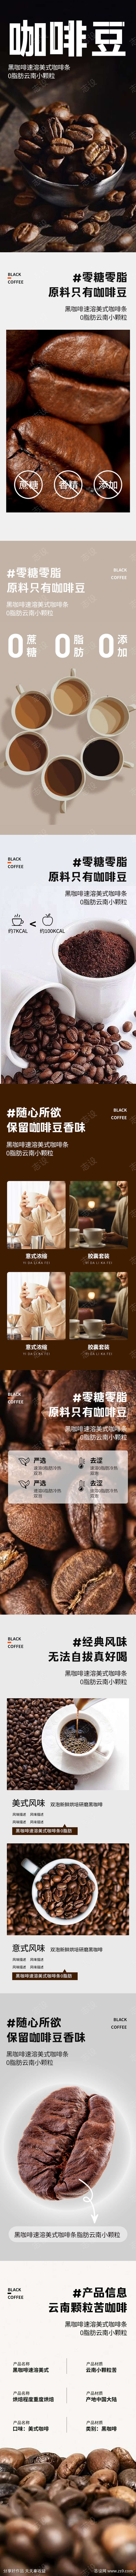 简约大气食品茶饮咖啡饮料详情页